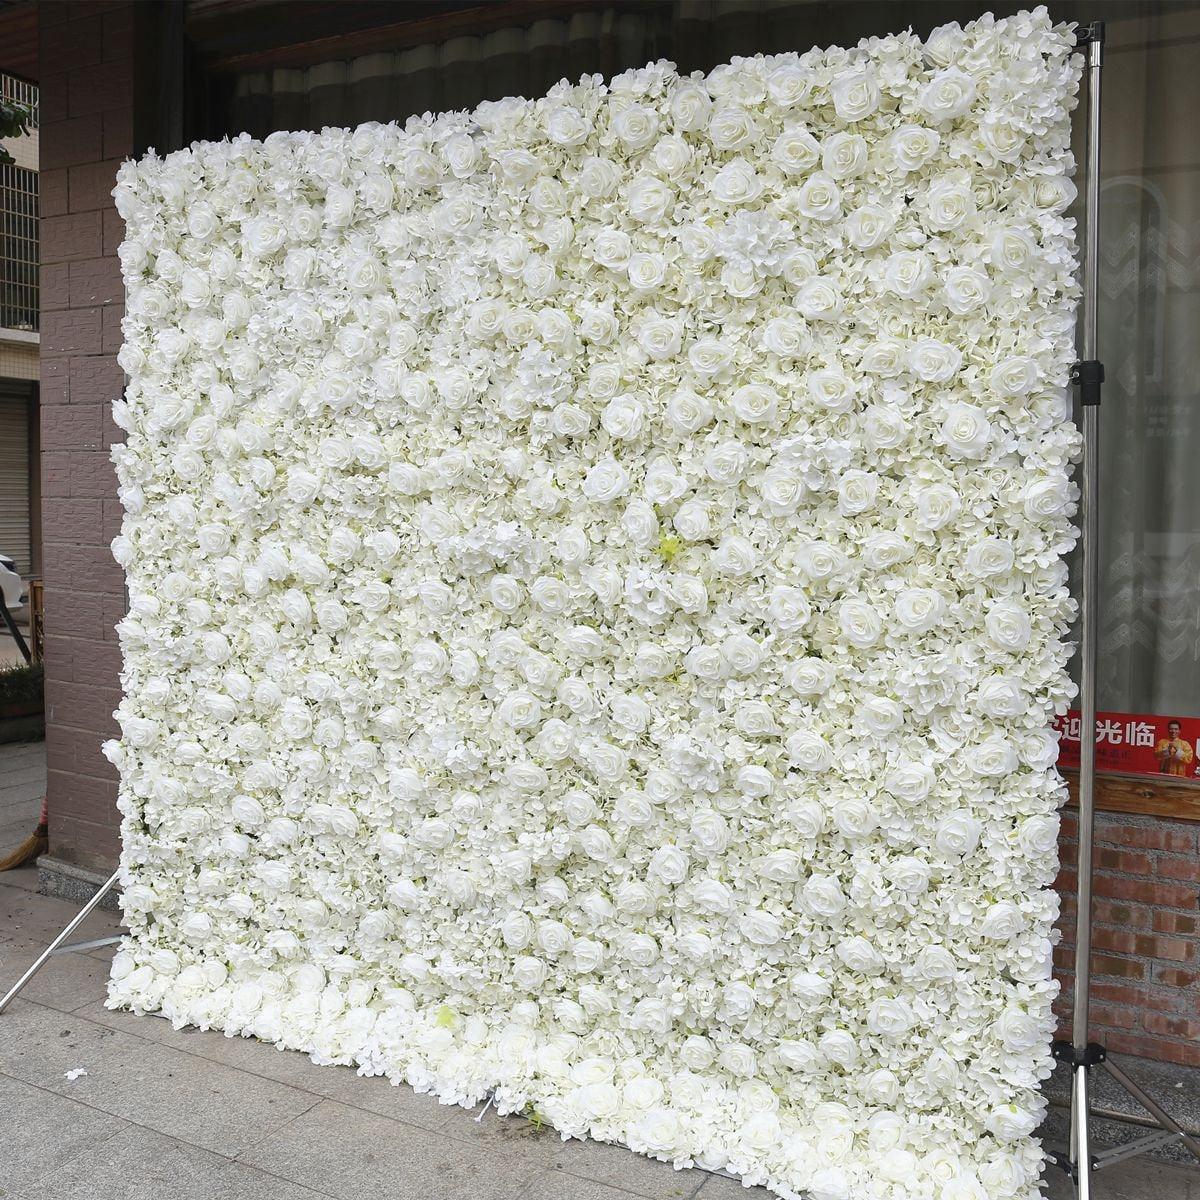 Wholesale Popular White Flower Wall Wedding Photography Backdrop Special Event Party Boutique Shop Arrangement Decor Floral Panels 40x60cm